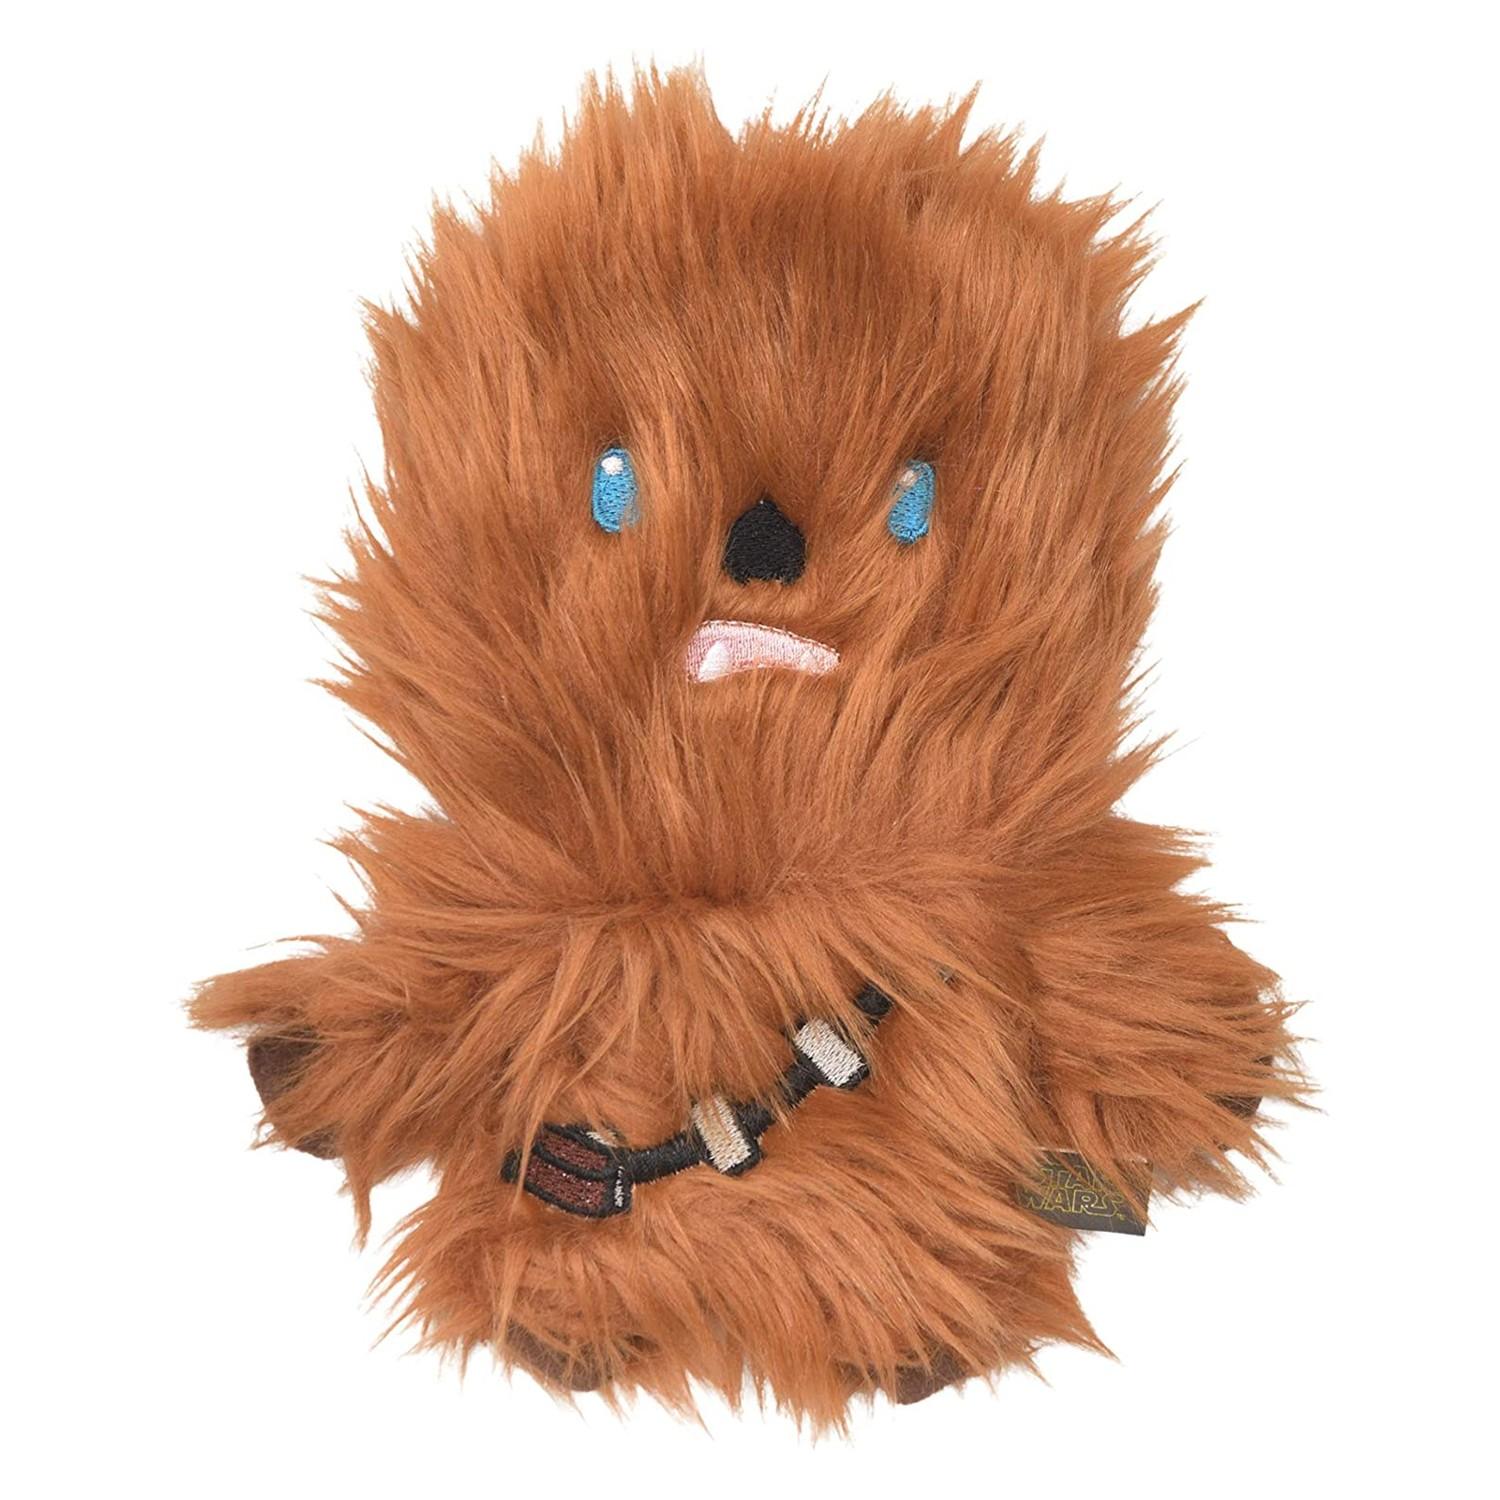 Star Wars Plush Flattie Dog Toy - Chewbacca